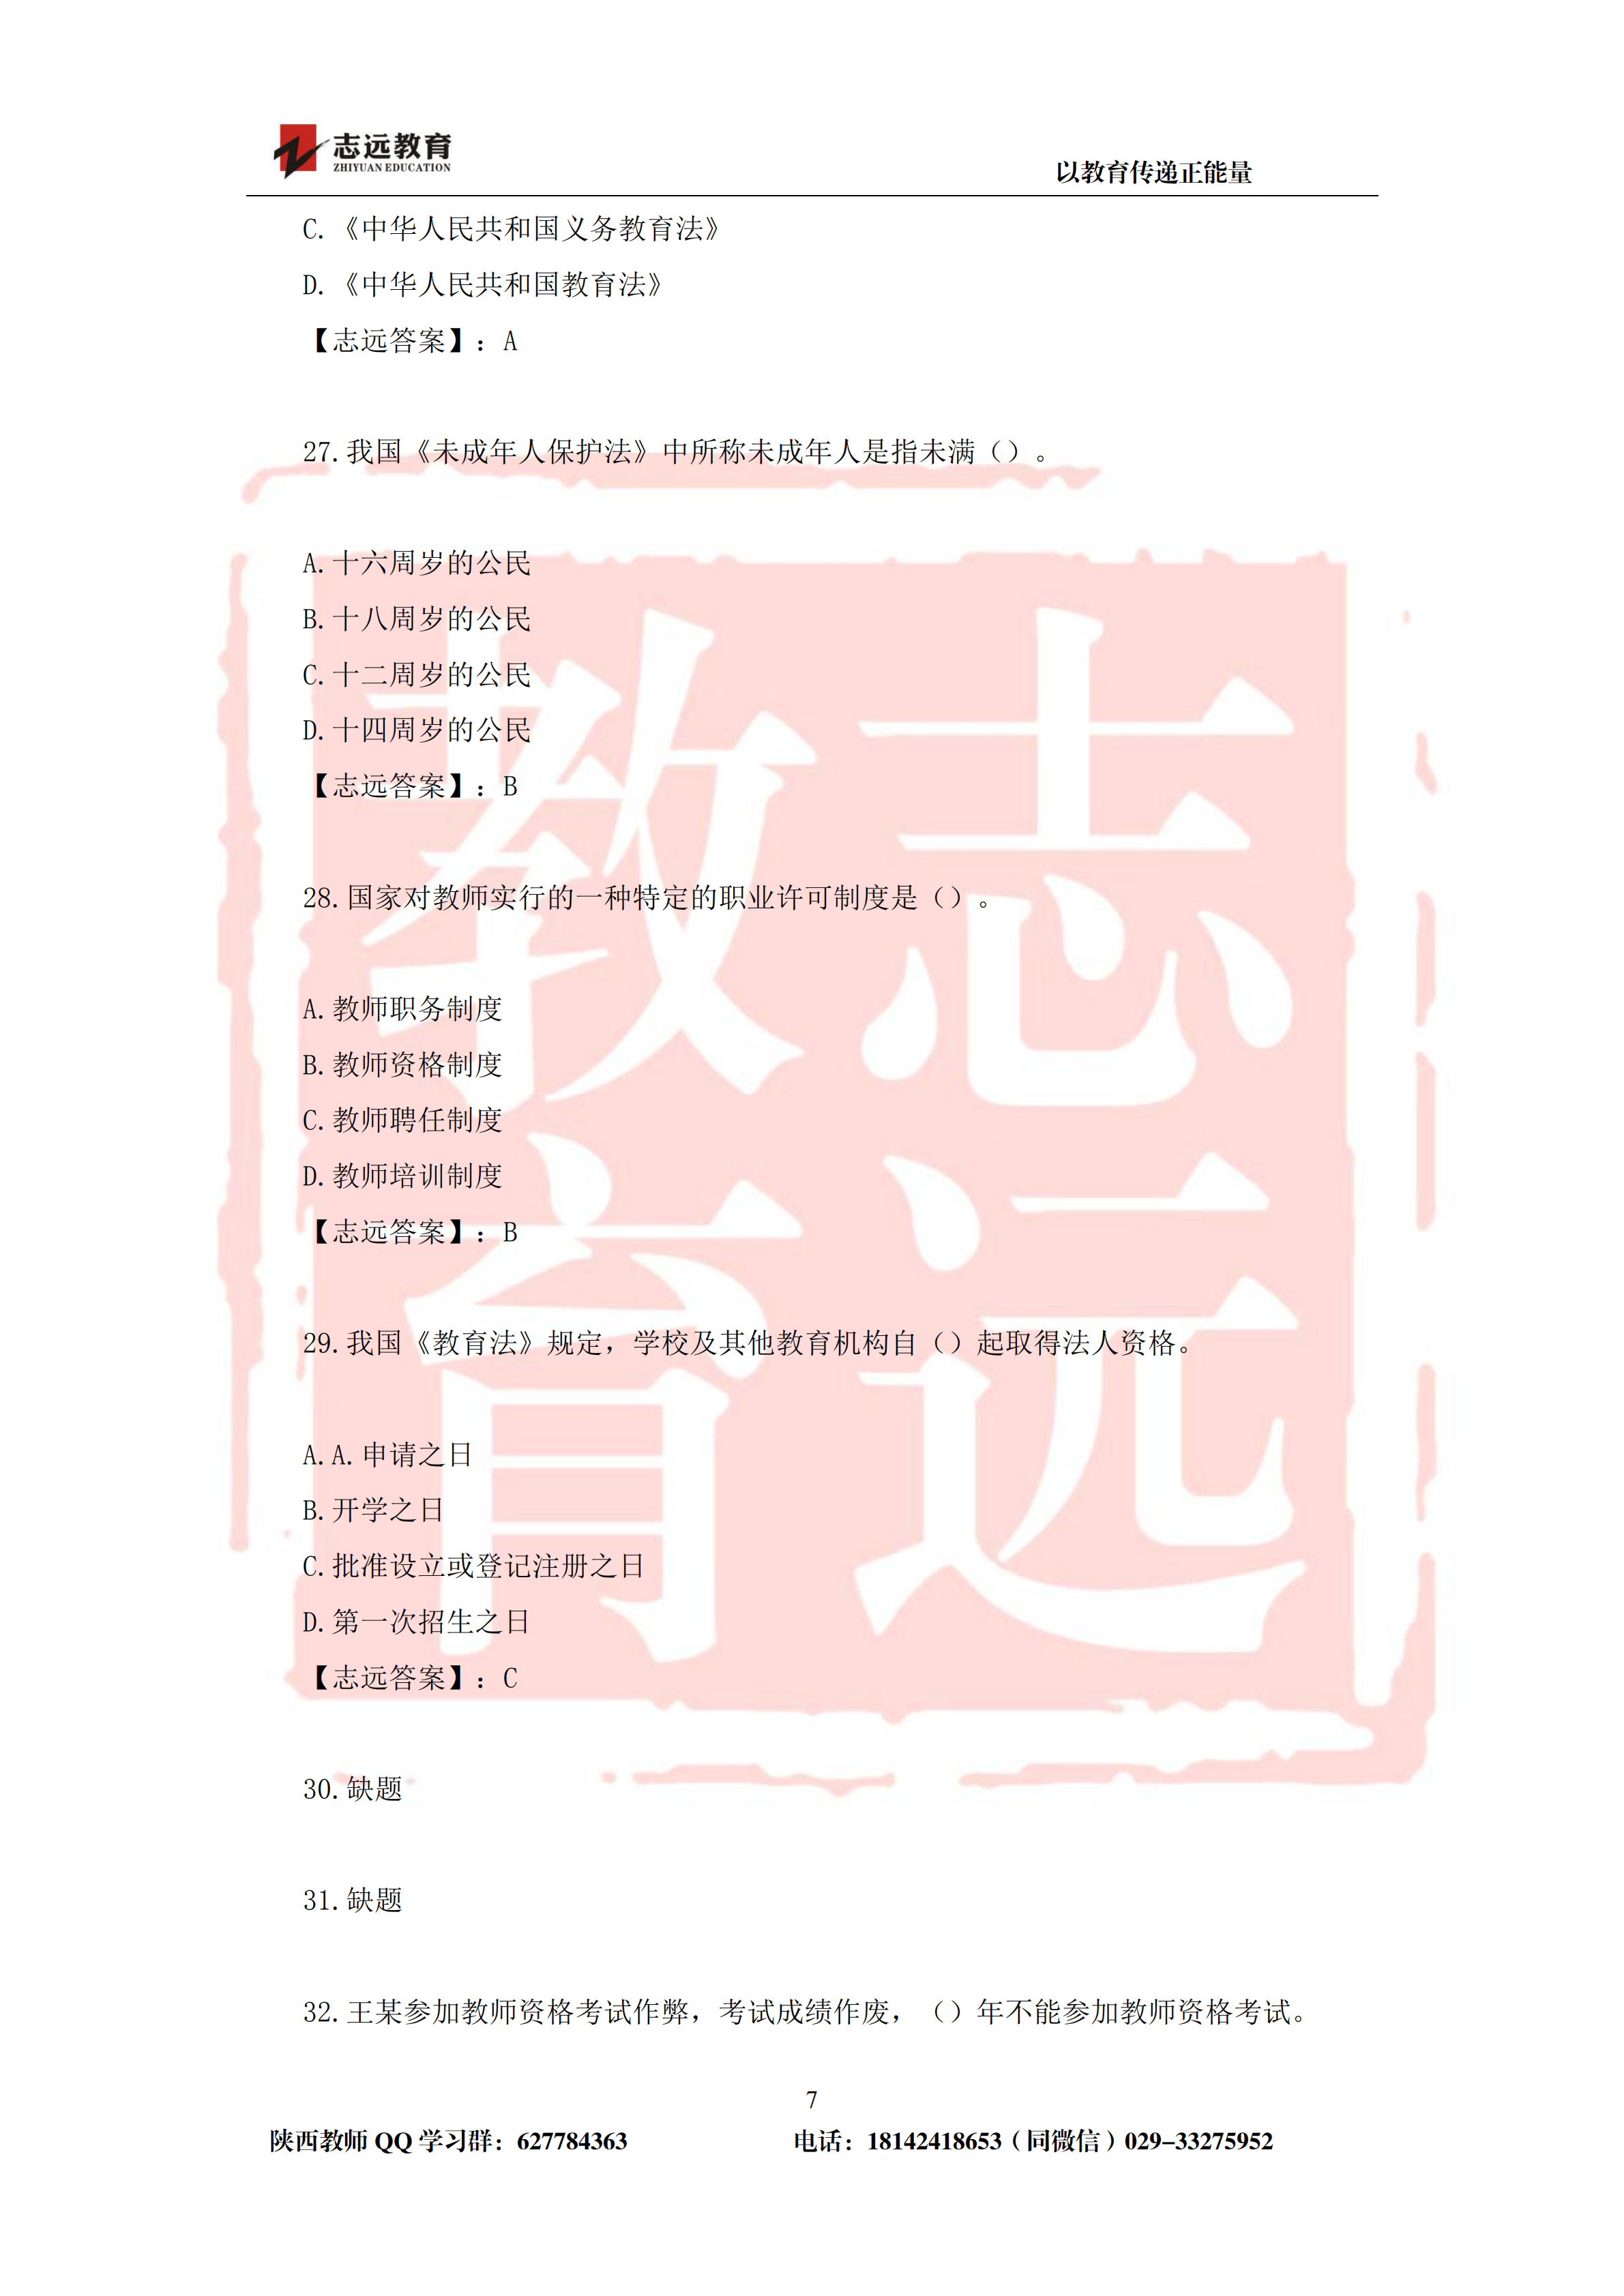 2019年陕西省特岗教师笔试中学试题及答案-志远学员回忆版(图7)